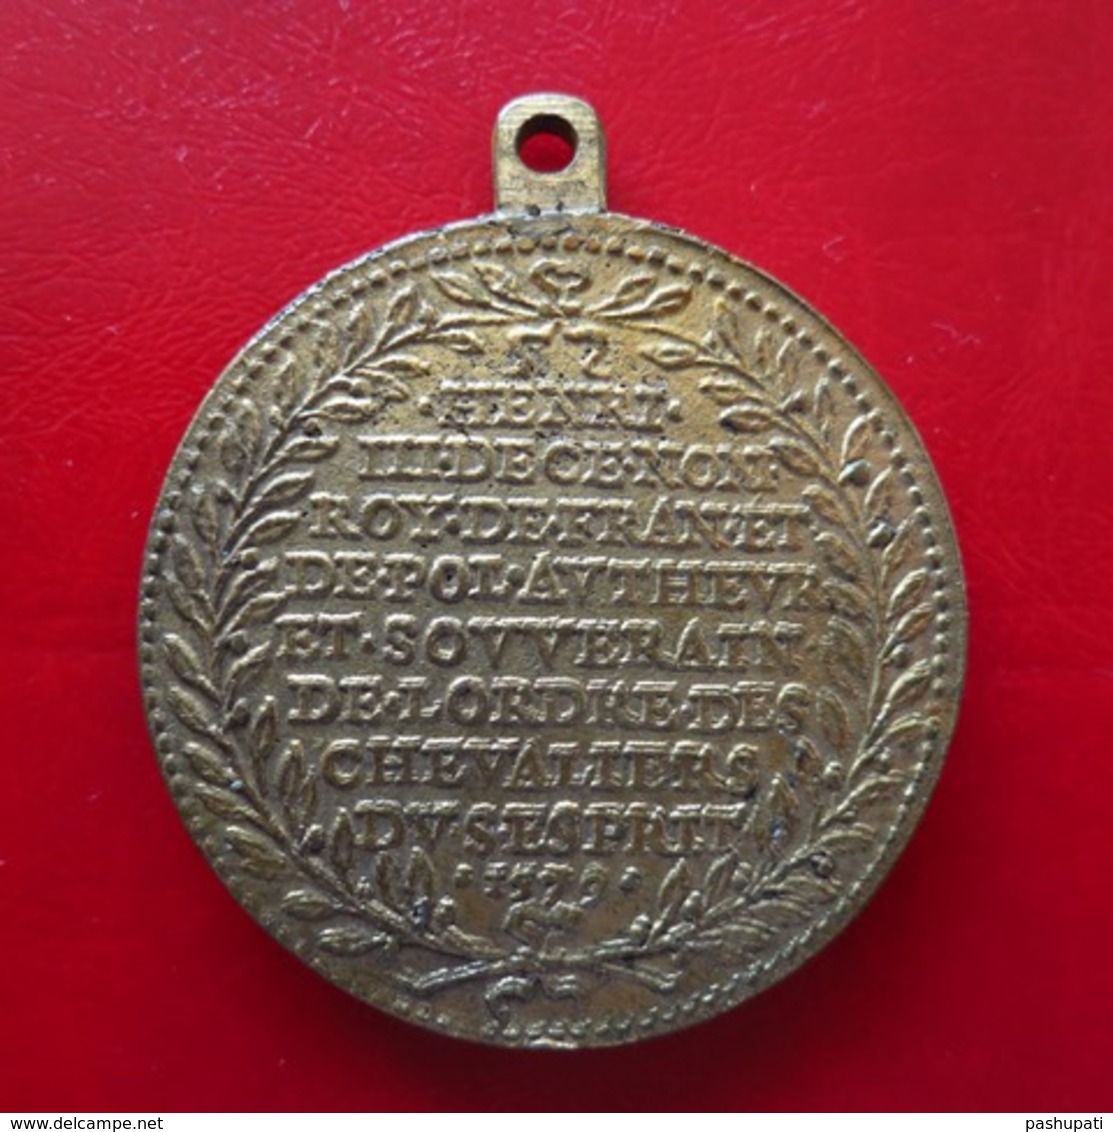 Médaille - Création De L'ordre Du St Esprit 1579 (reproduction) - Henri III - Intevere Christus - 40mm 31,74g - Adel